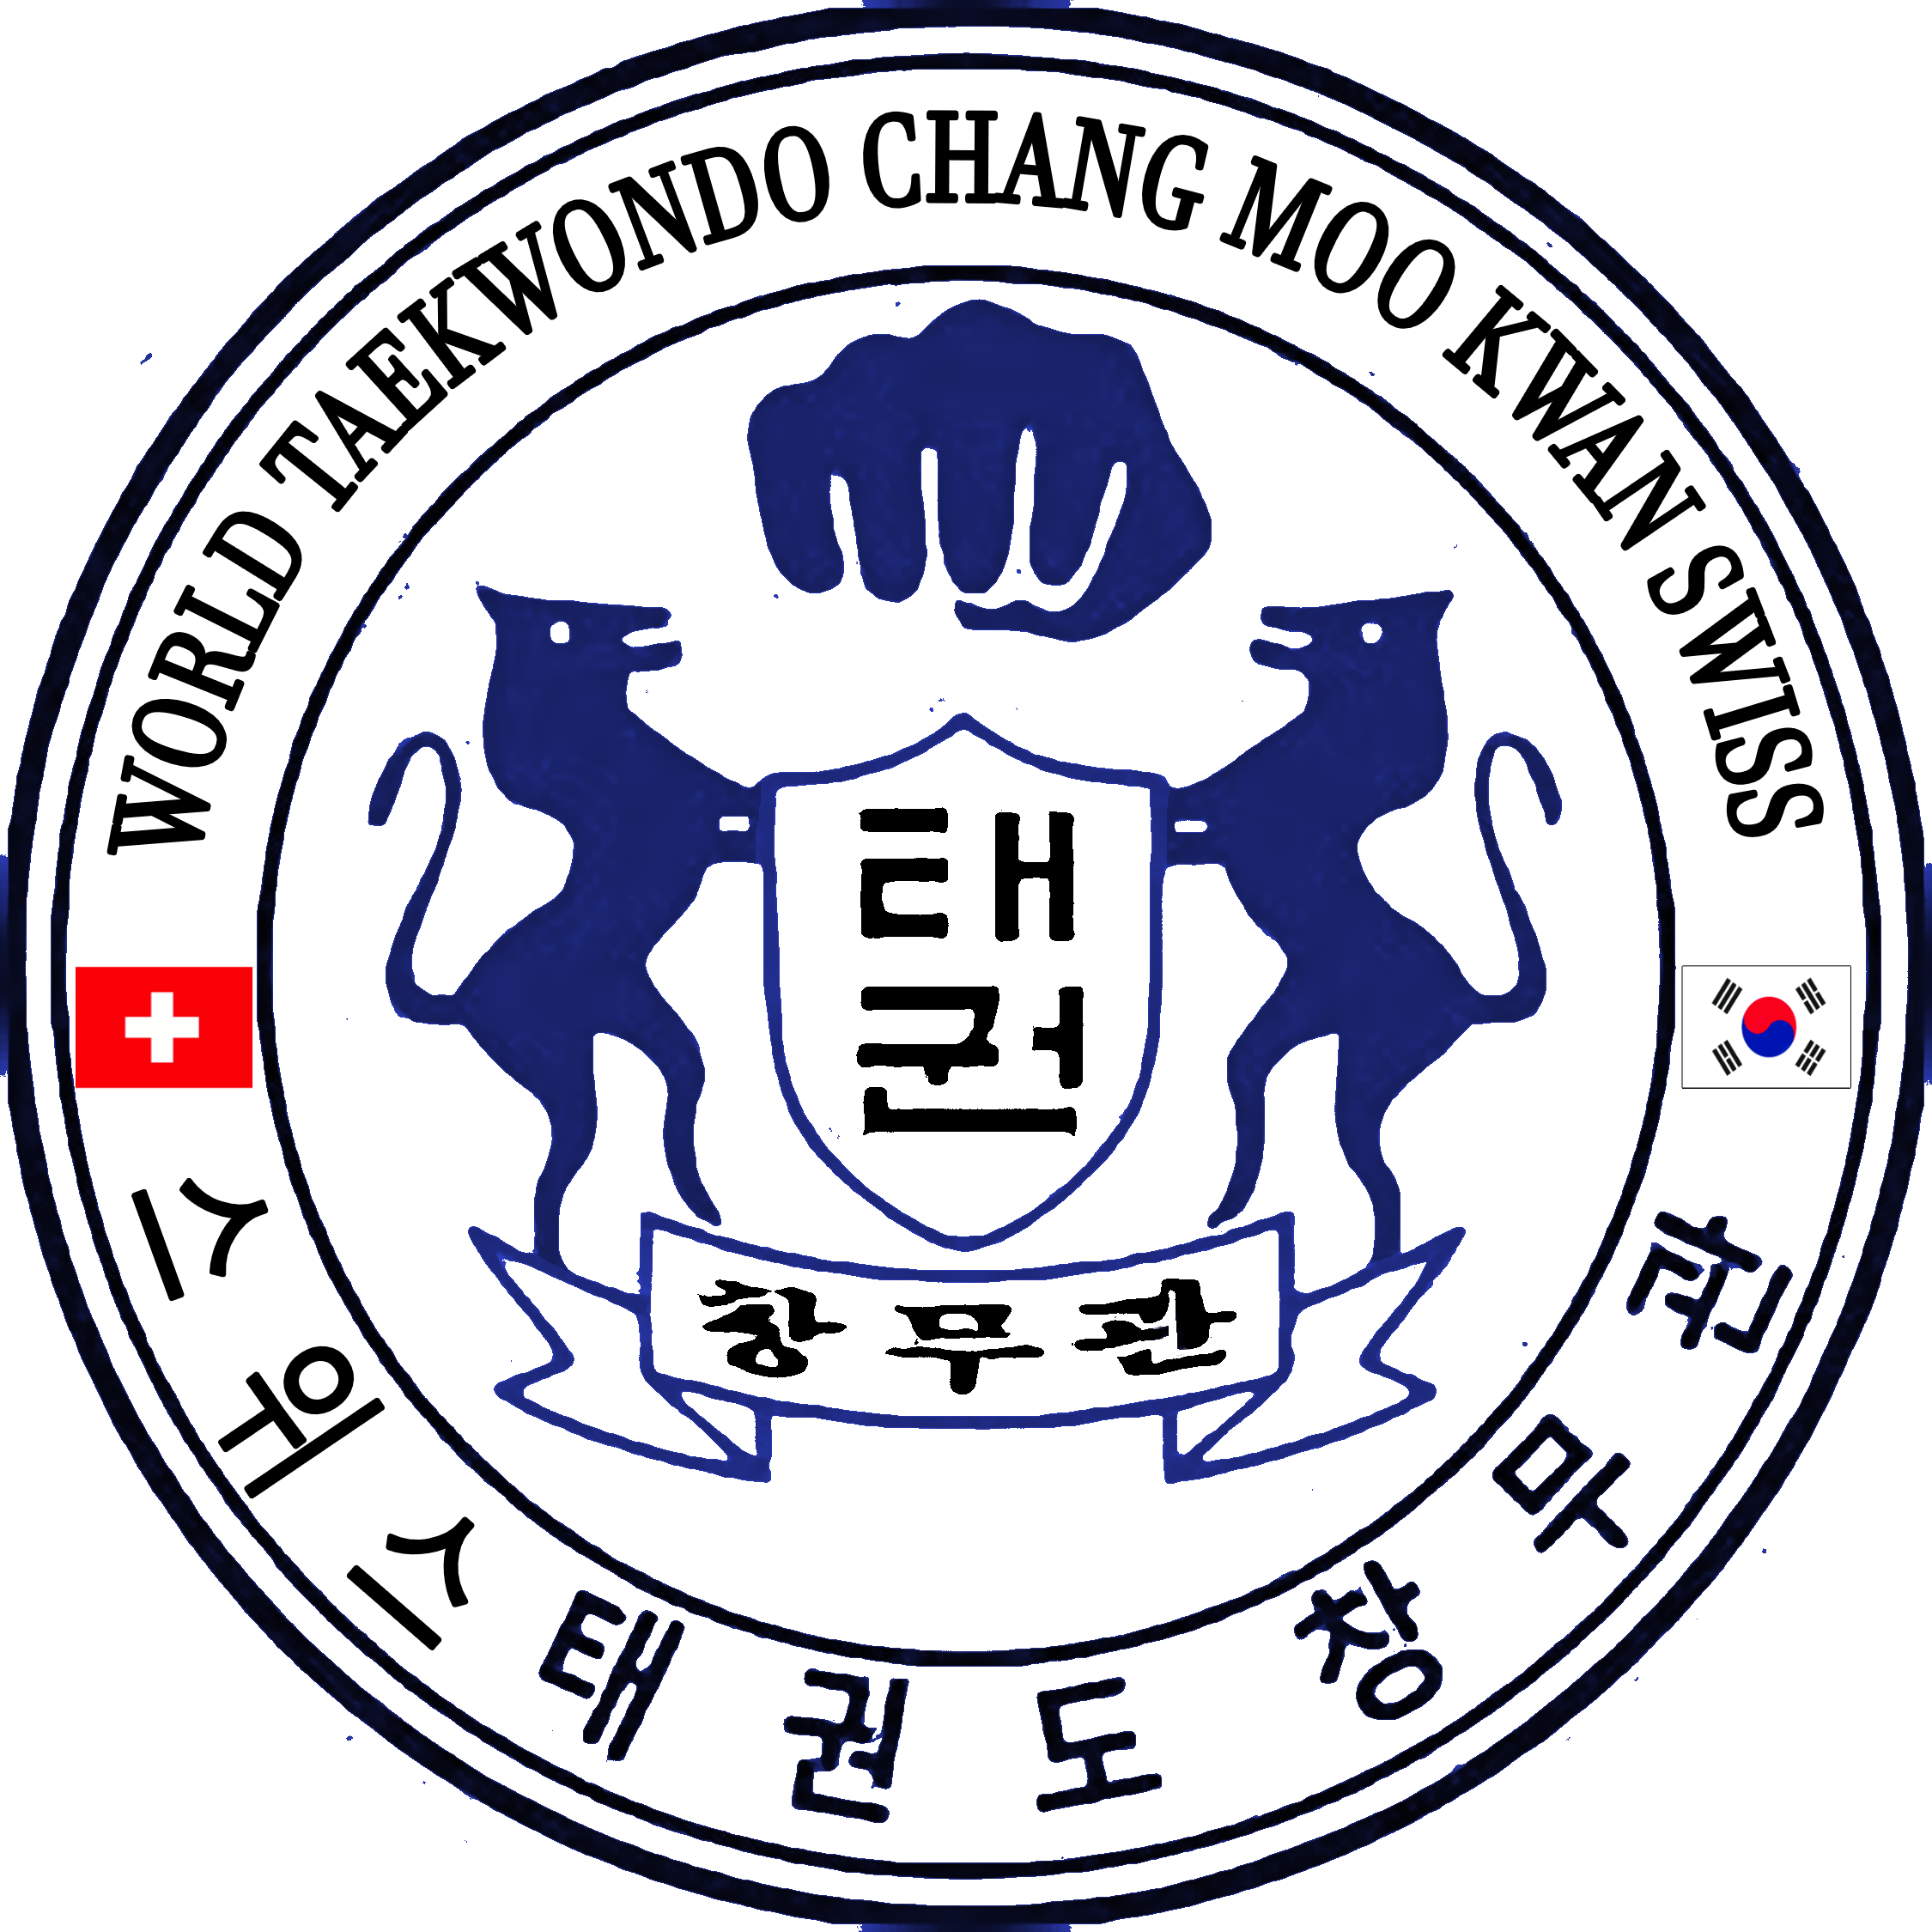 World Taekwondo Chang Moo Kwan 03